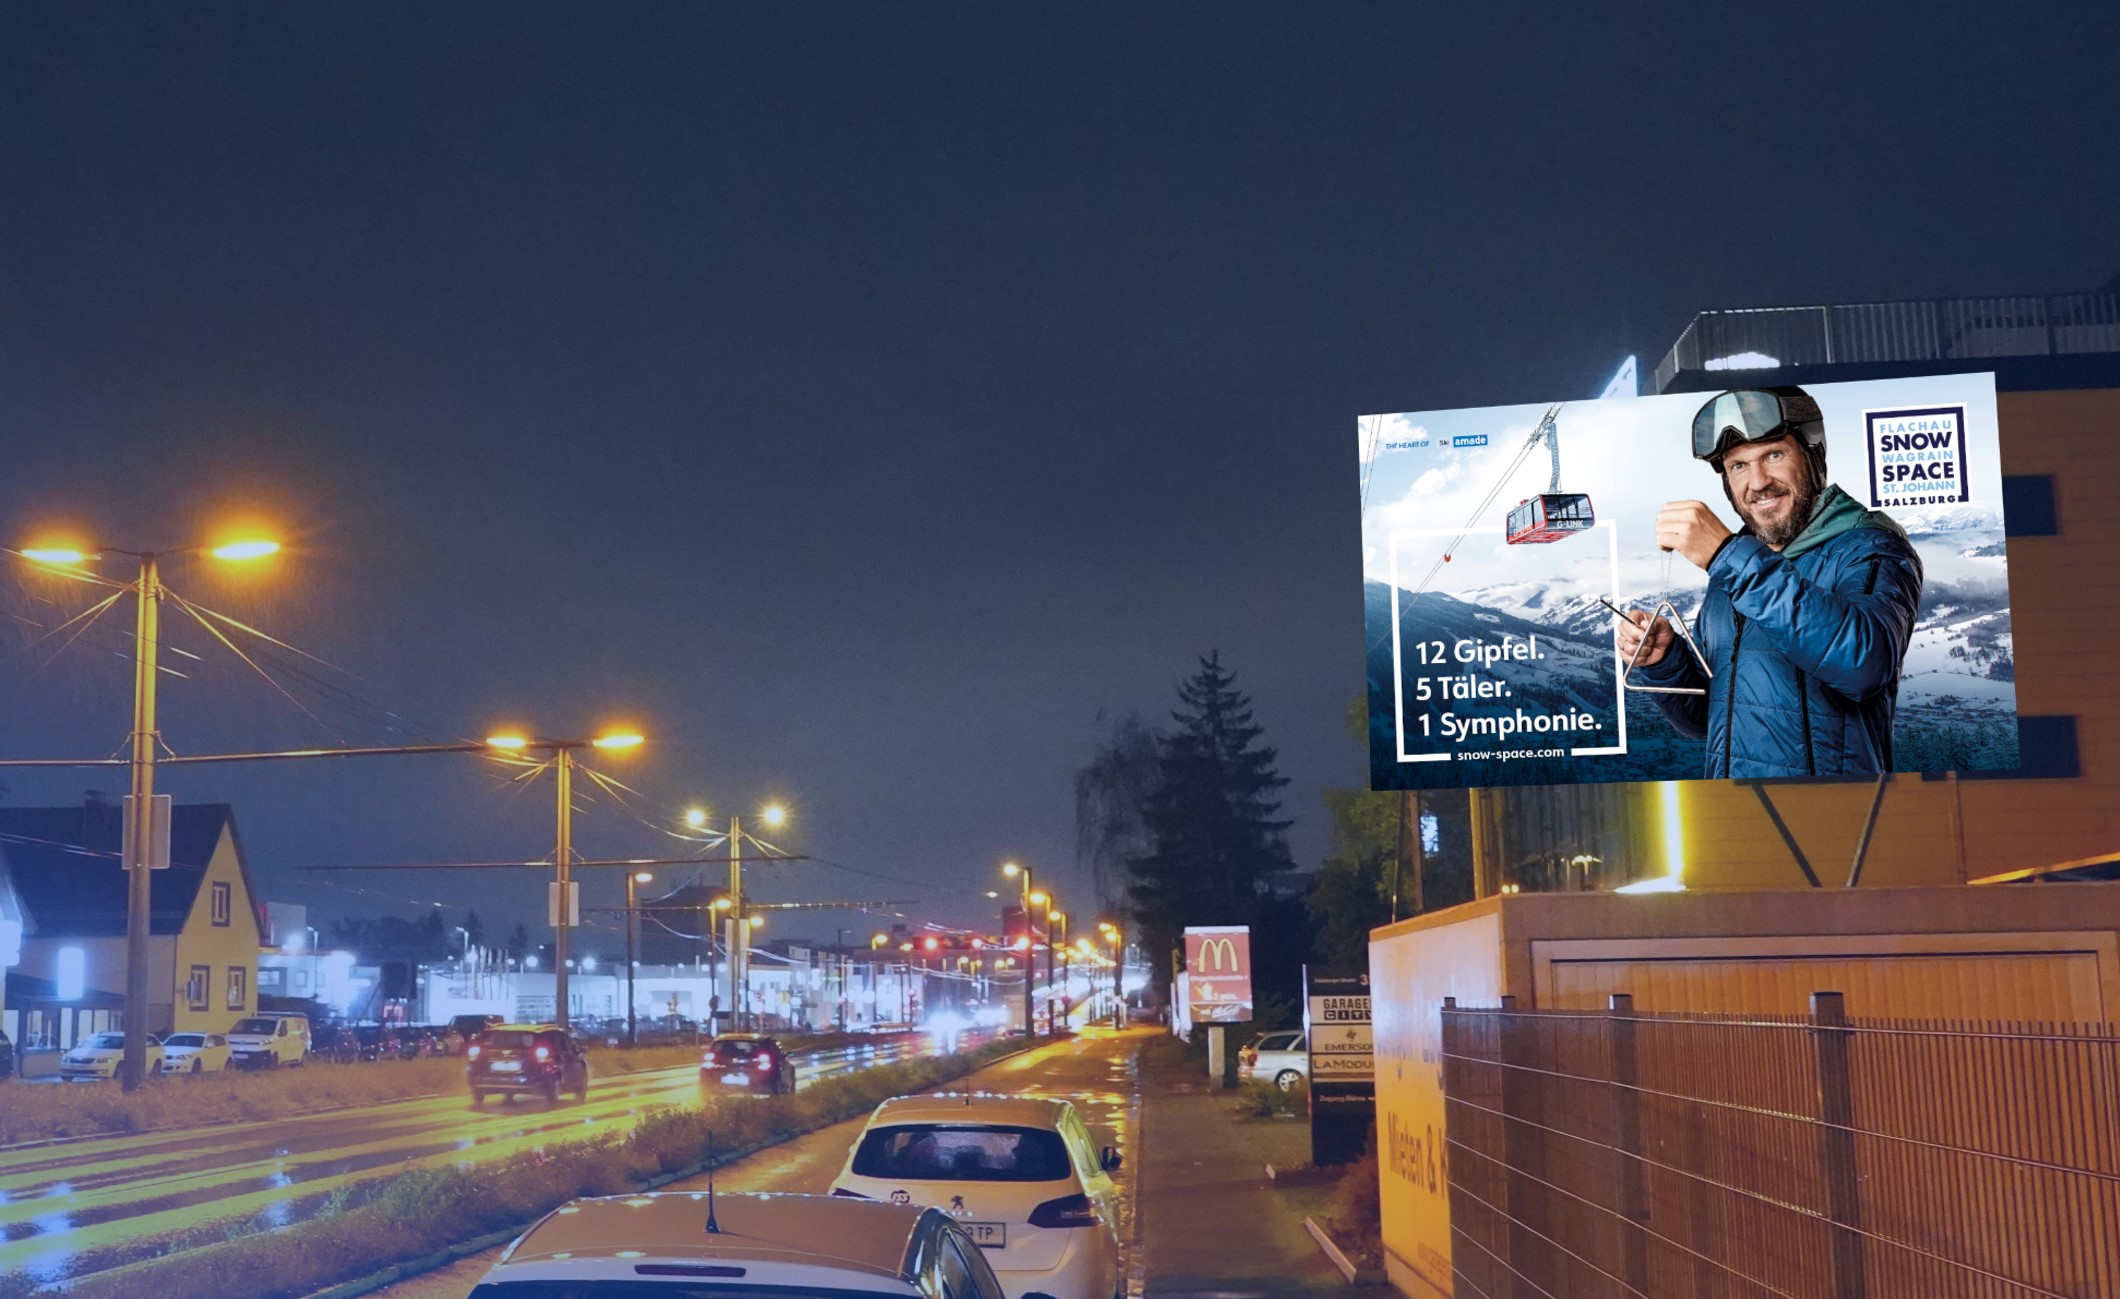 Snow Space Kampagne auf LED-Wall (DOOH) von Popp Vision in Linz